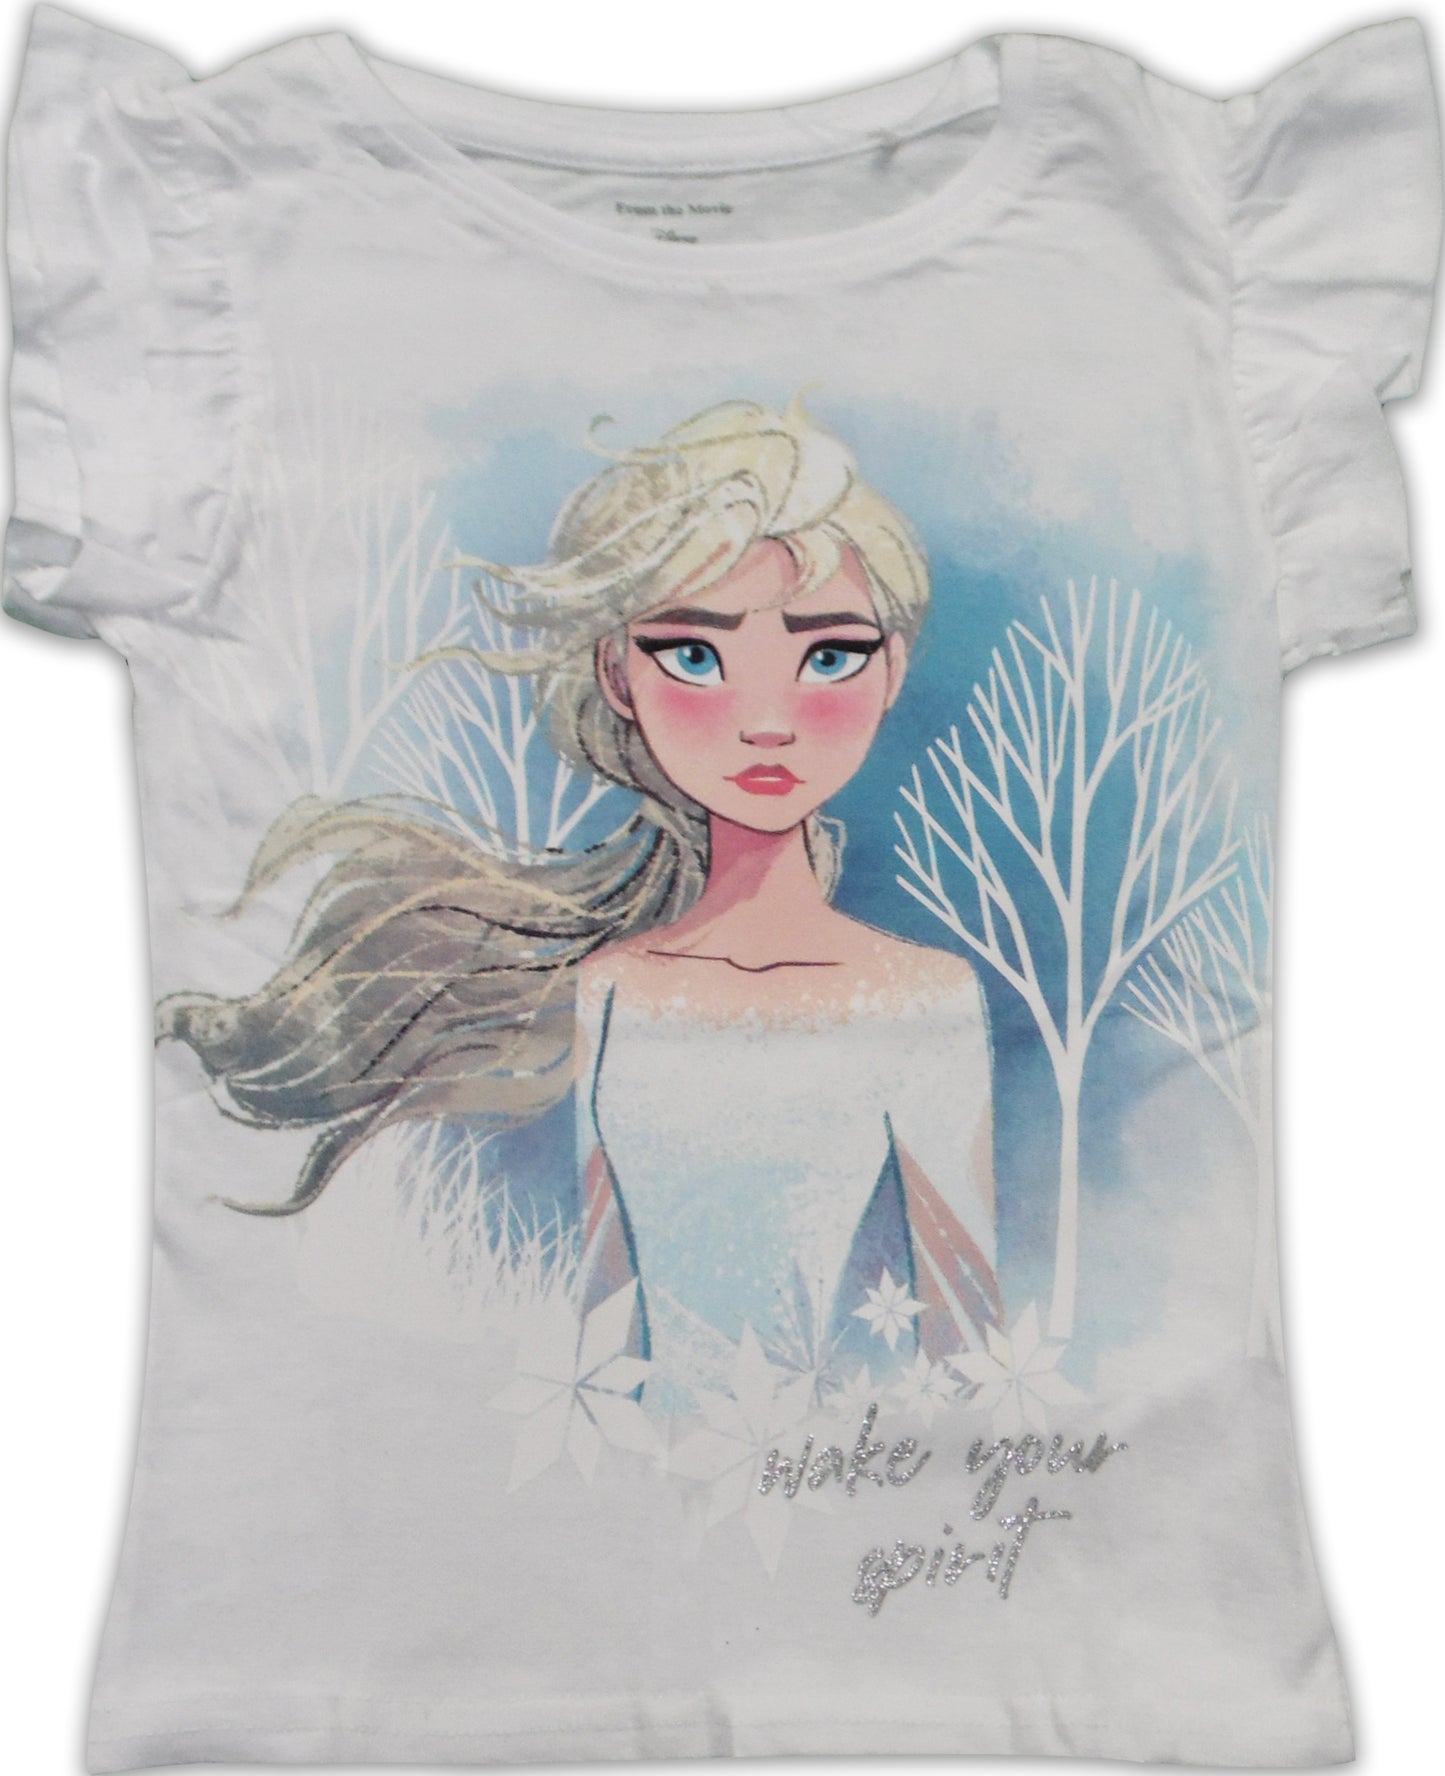 Disney Frozen Elsa Short Sleeve Cotton Pyjama Set